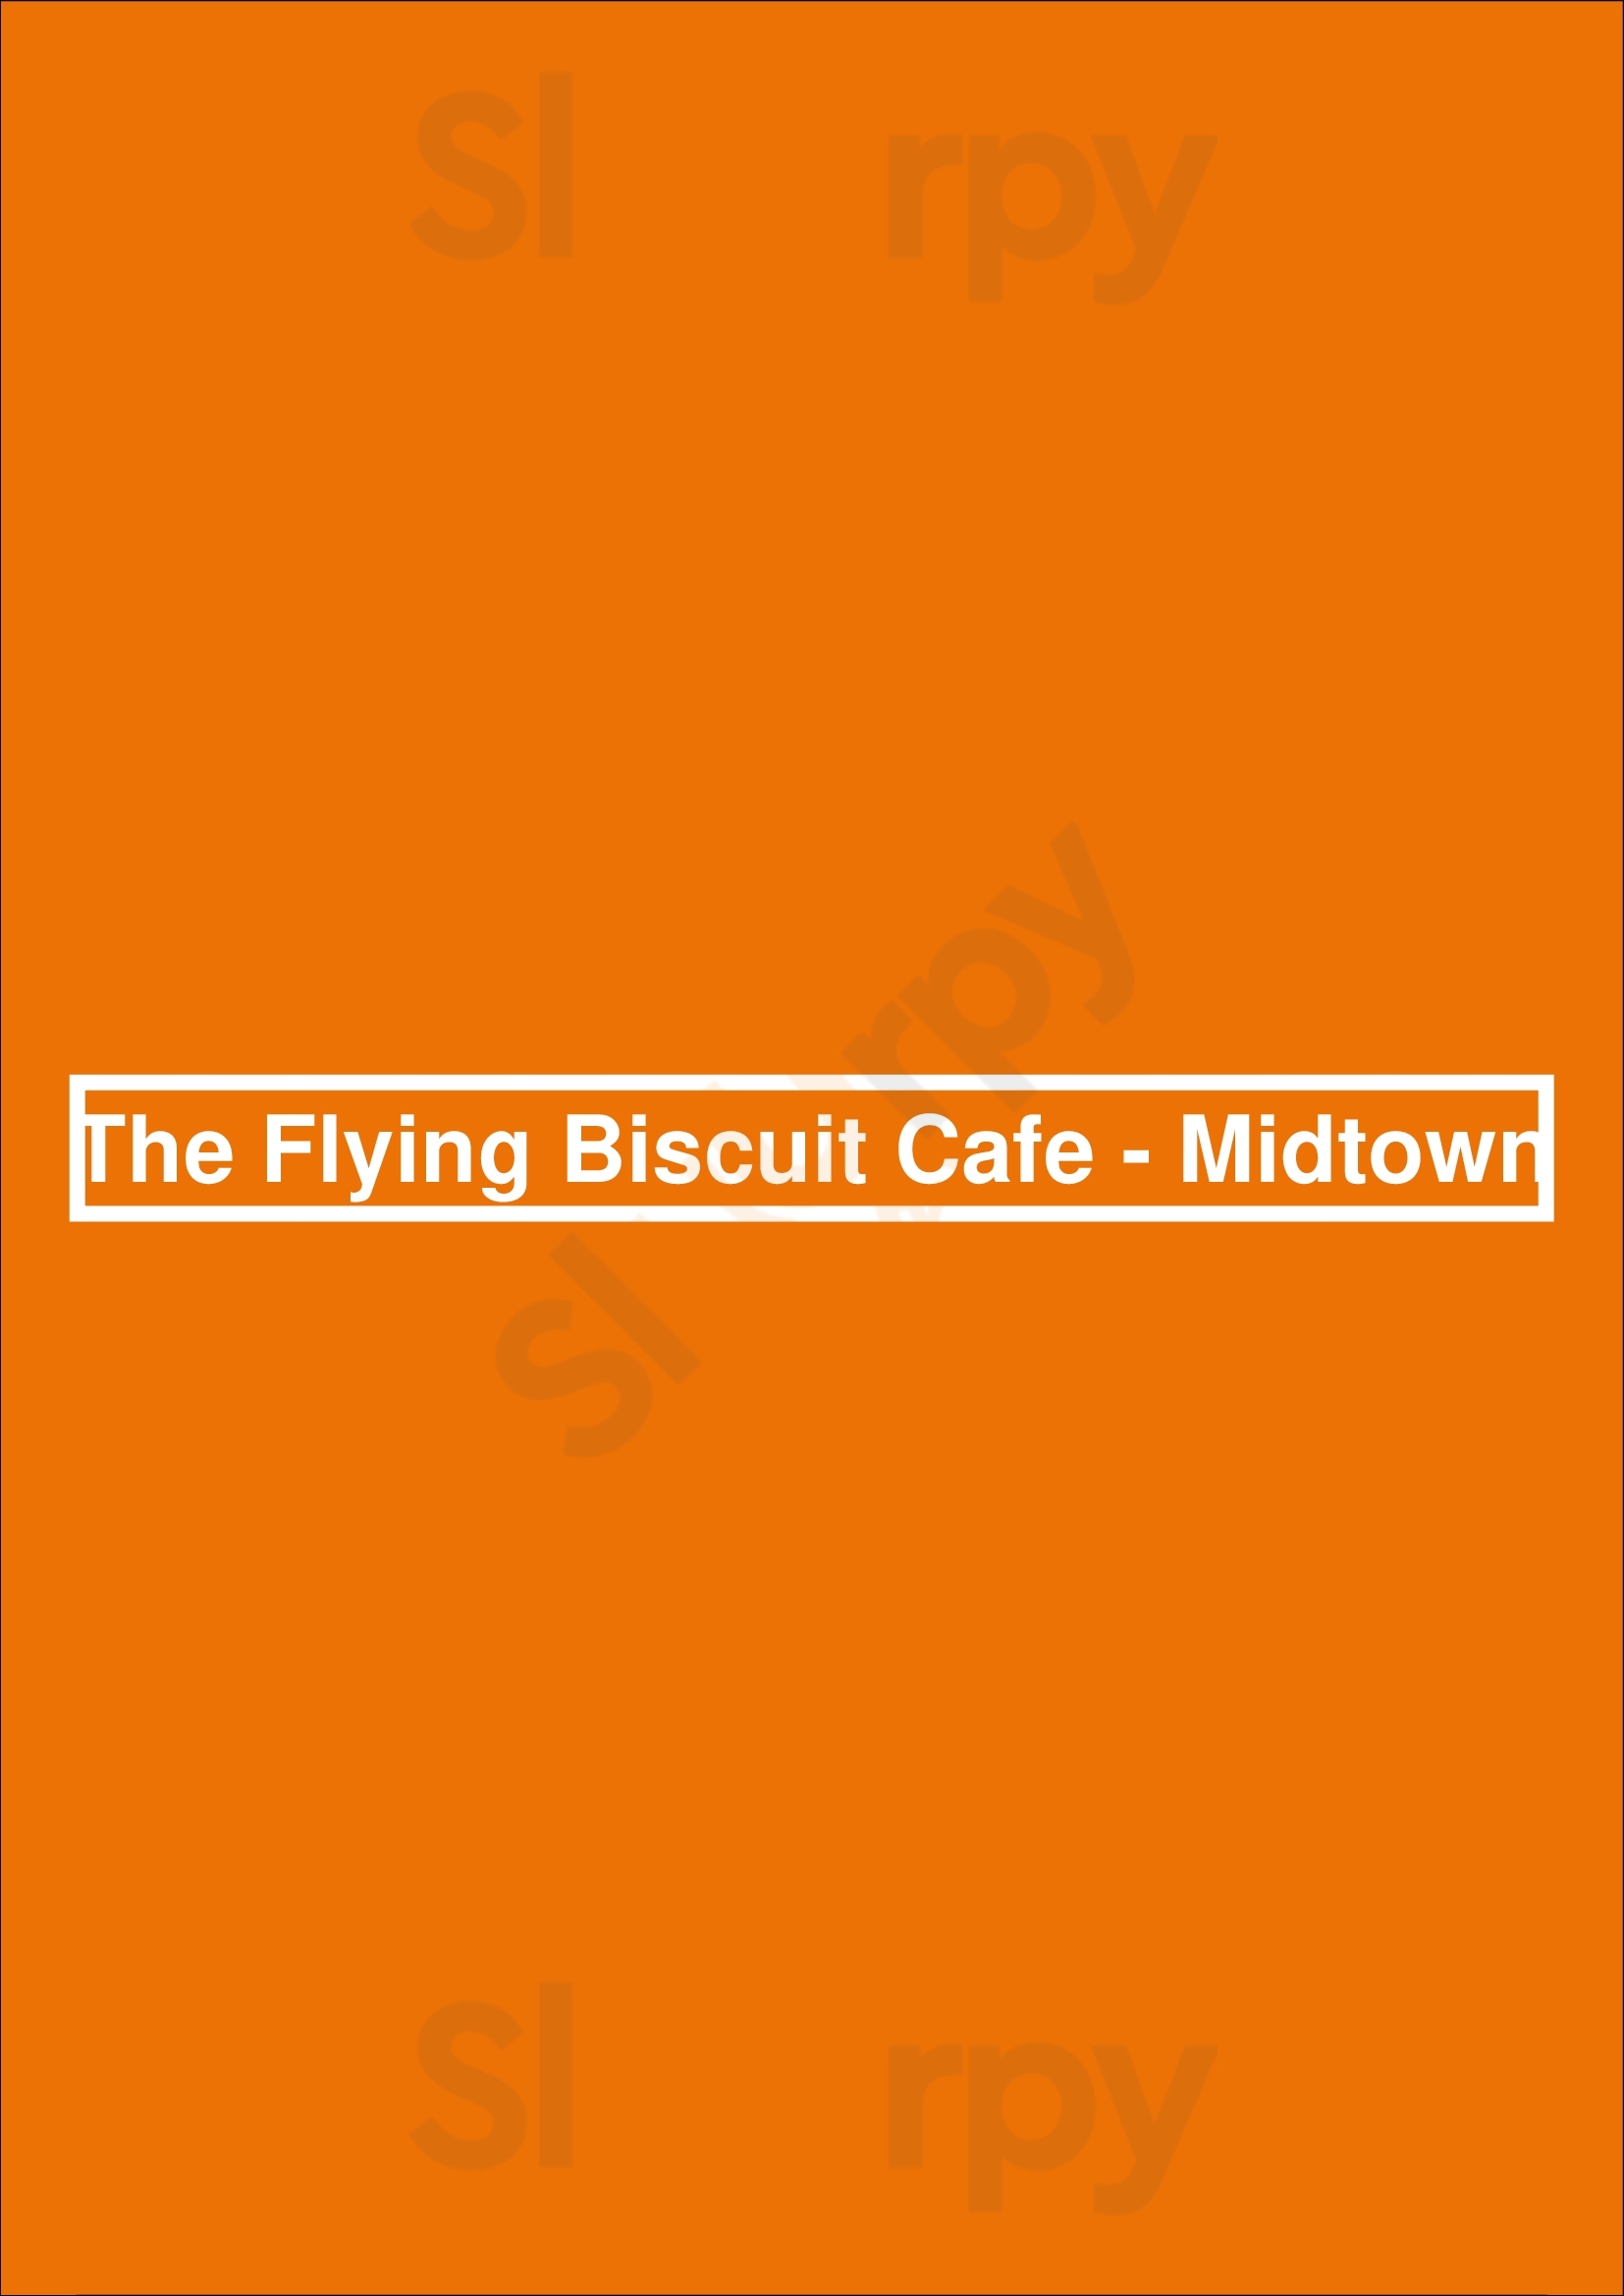 Flying Biscuit Cafe - Midtown Atlanta Menu - 1